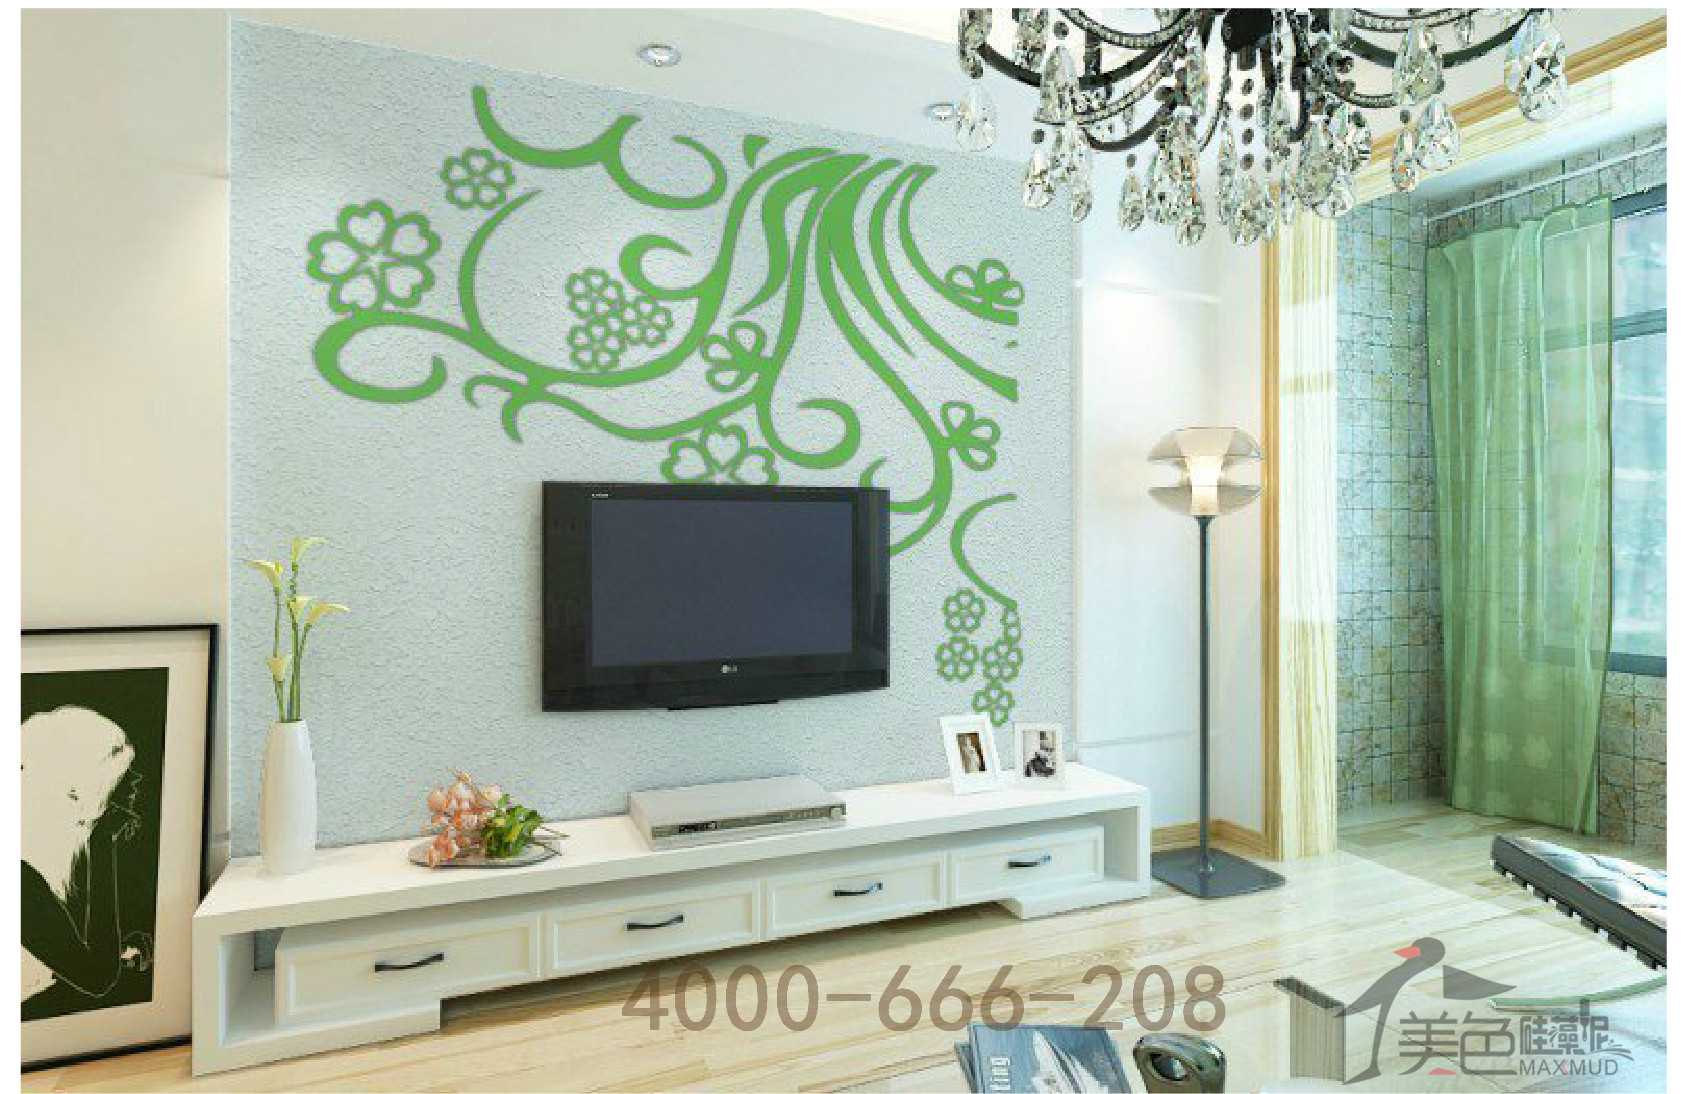 美色硅藻泥现代简约电视背景墙儿童房背景墙防霉健康环保去甲醛图片